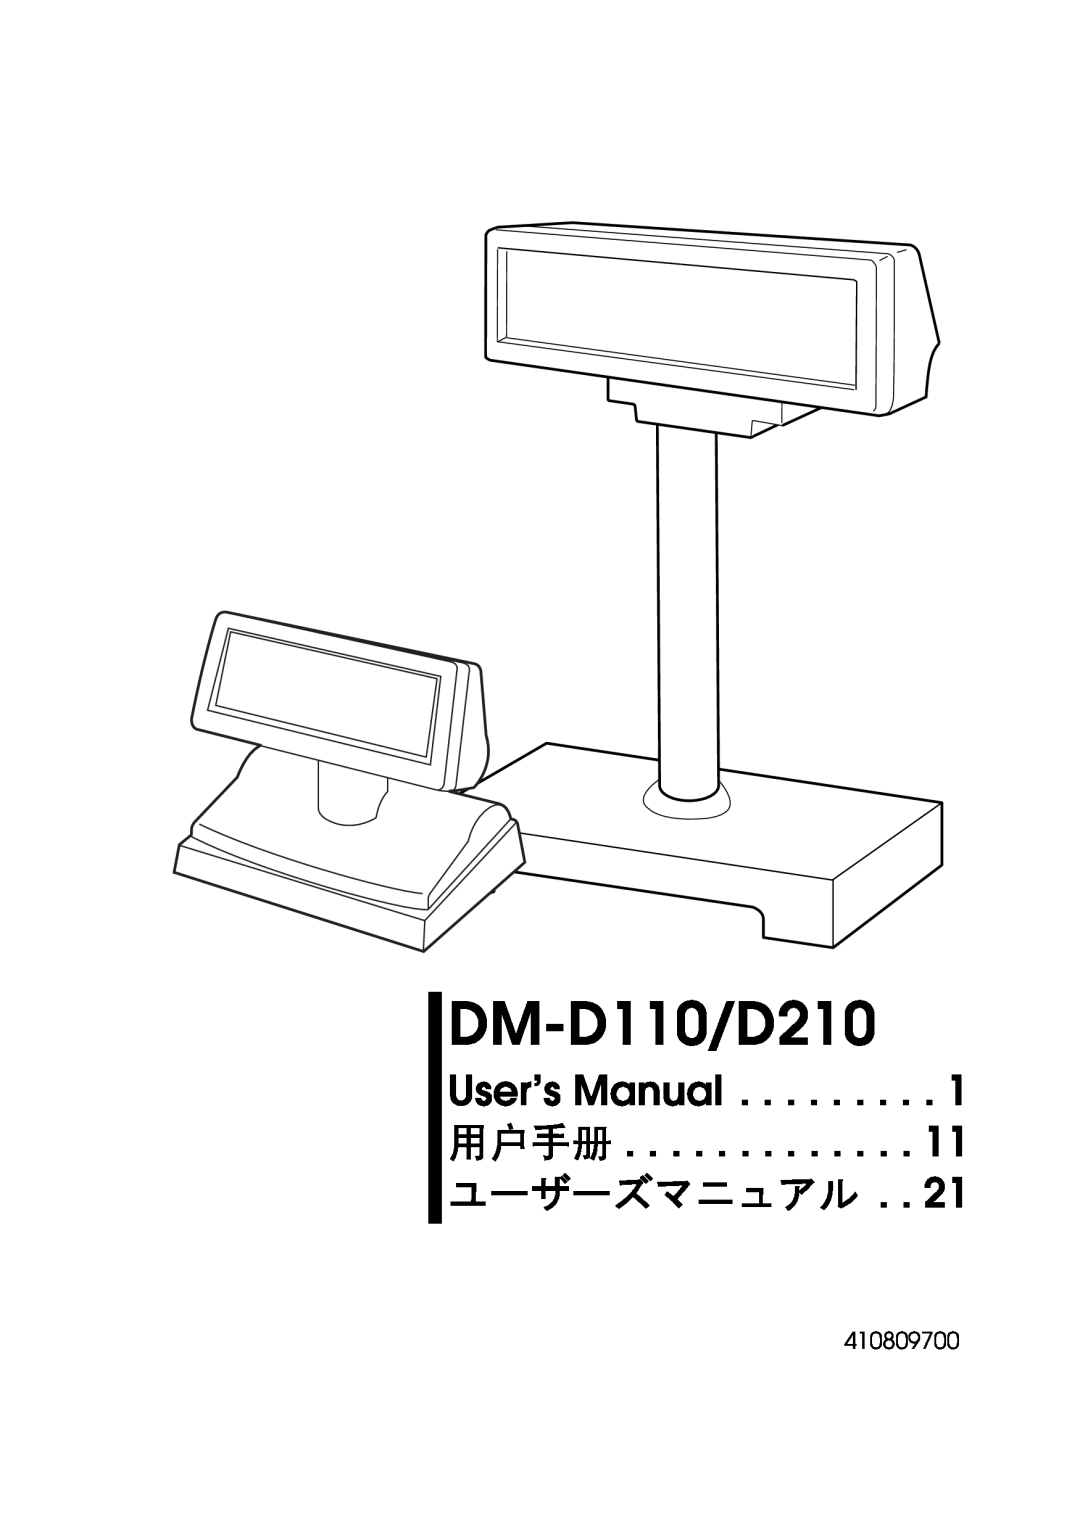 Epson user manual DM-D110/D210, 410809700 